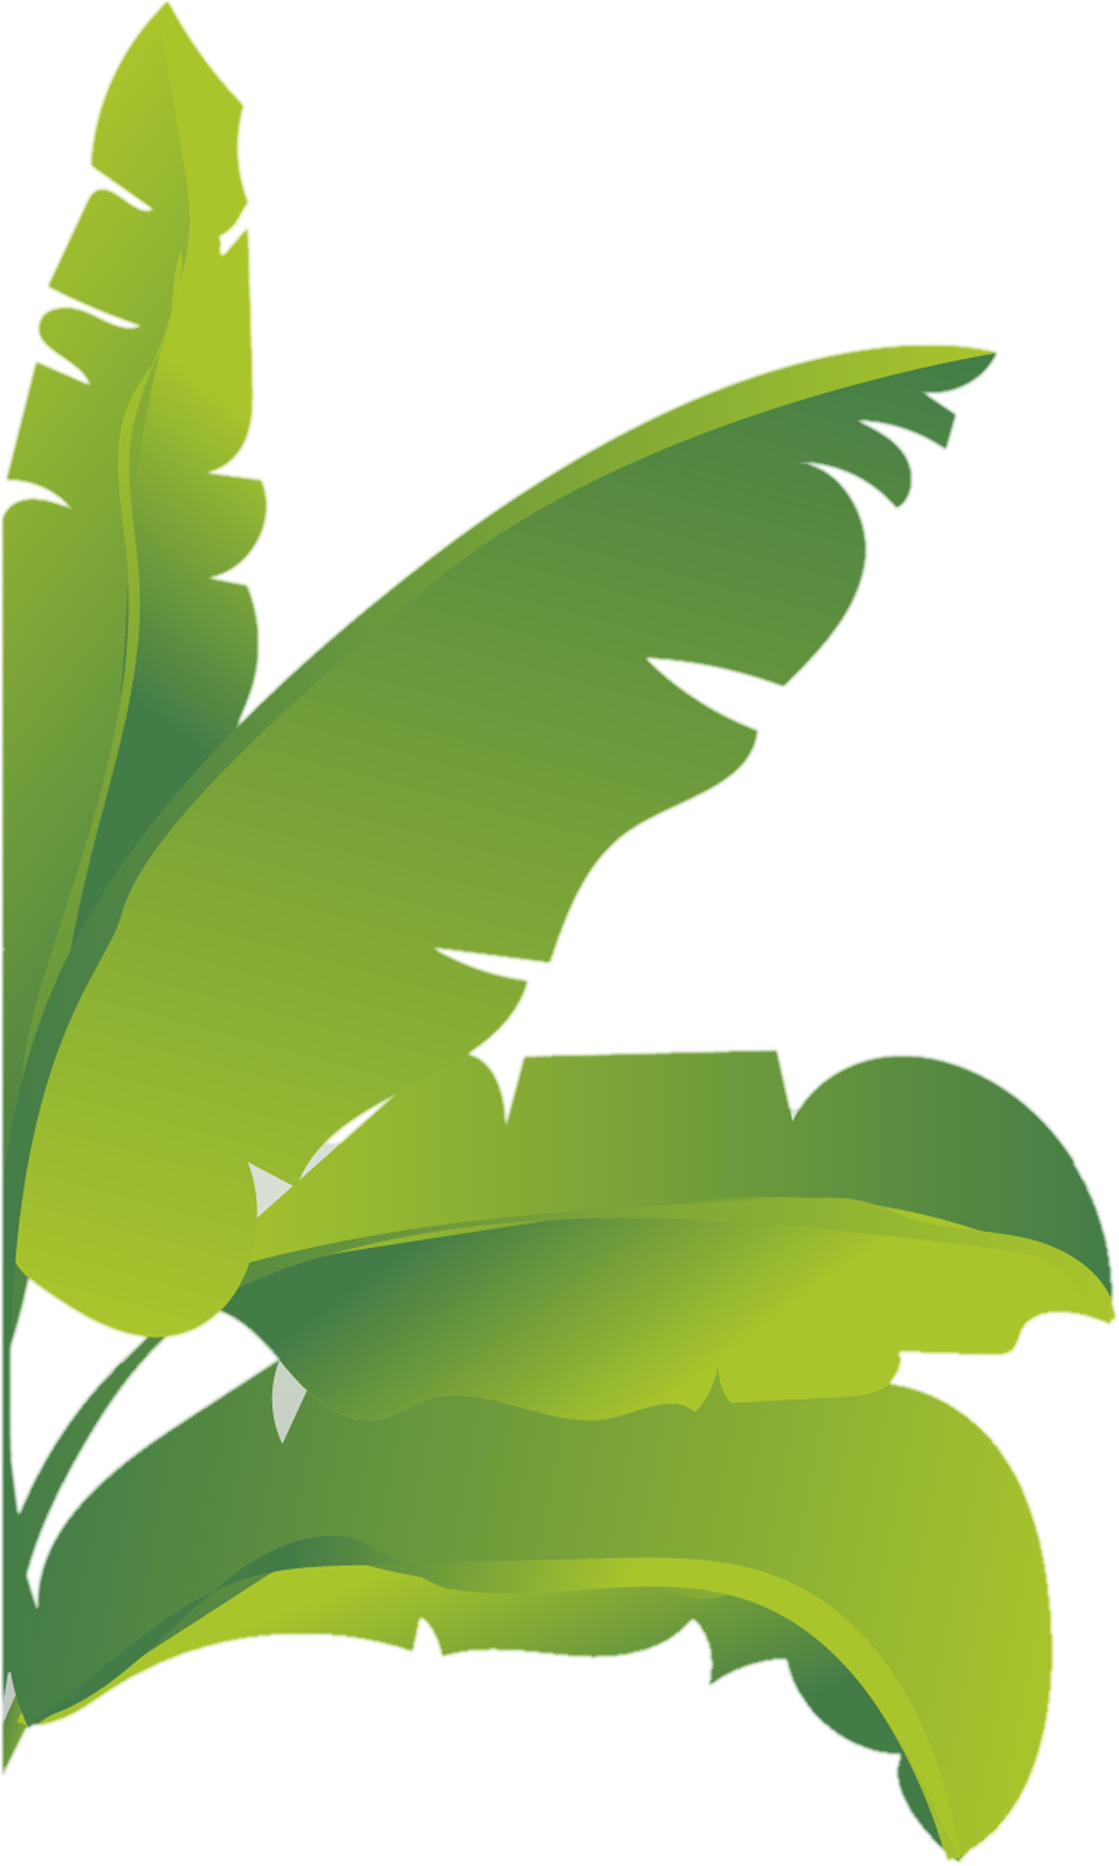 Banana Leaf Vector Illustration PNG image